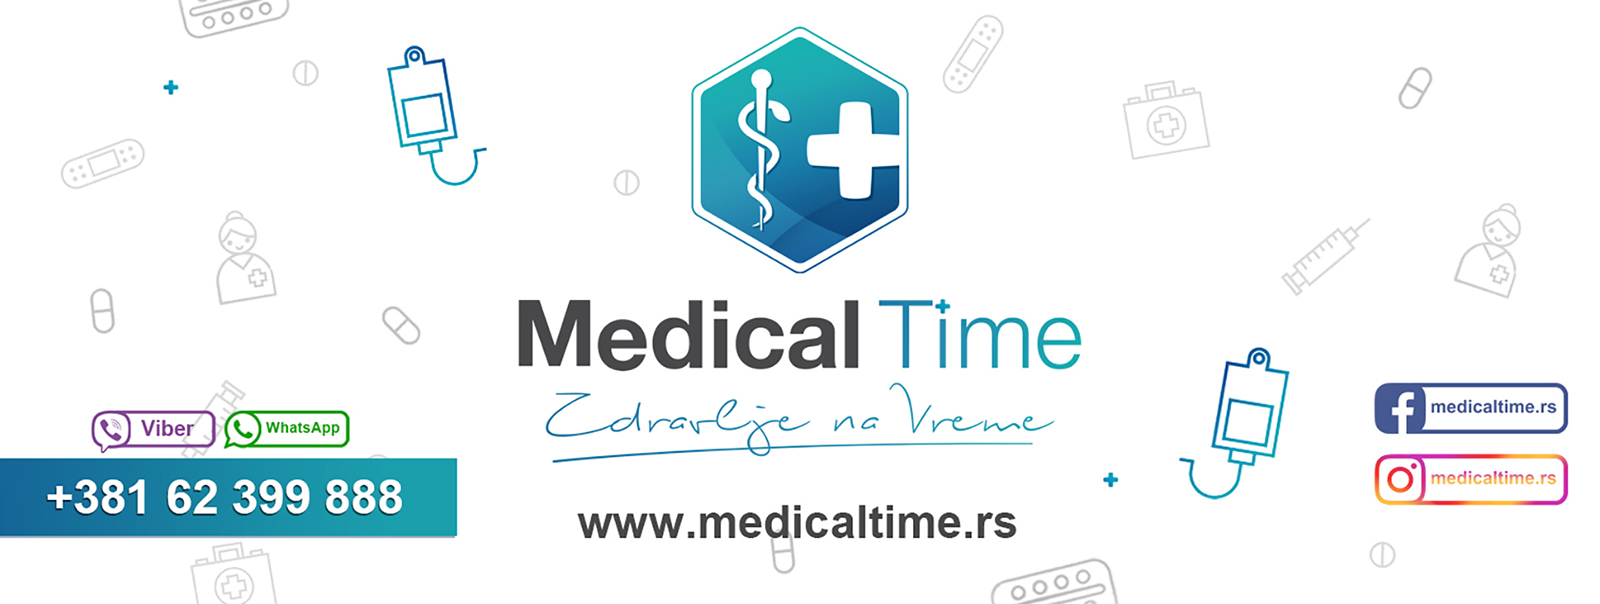 medicaltime hospital